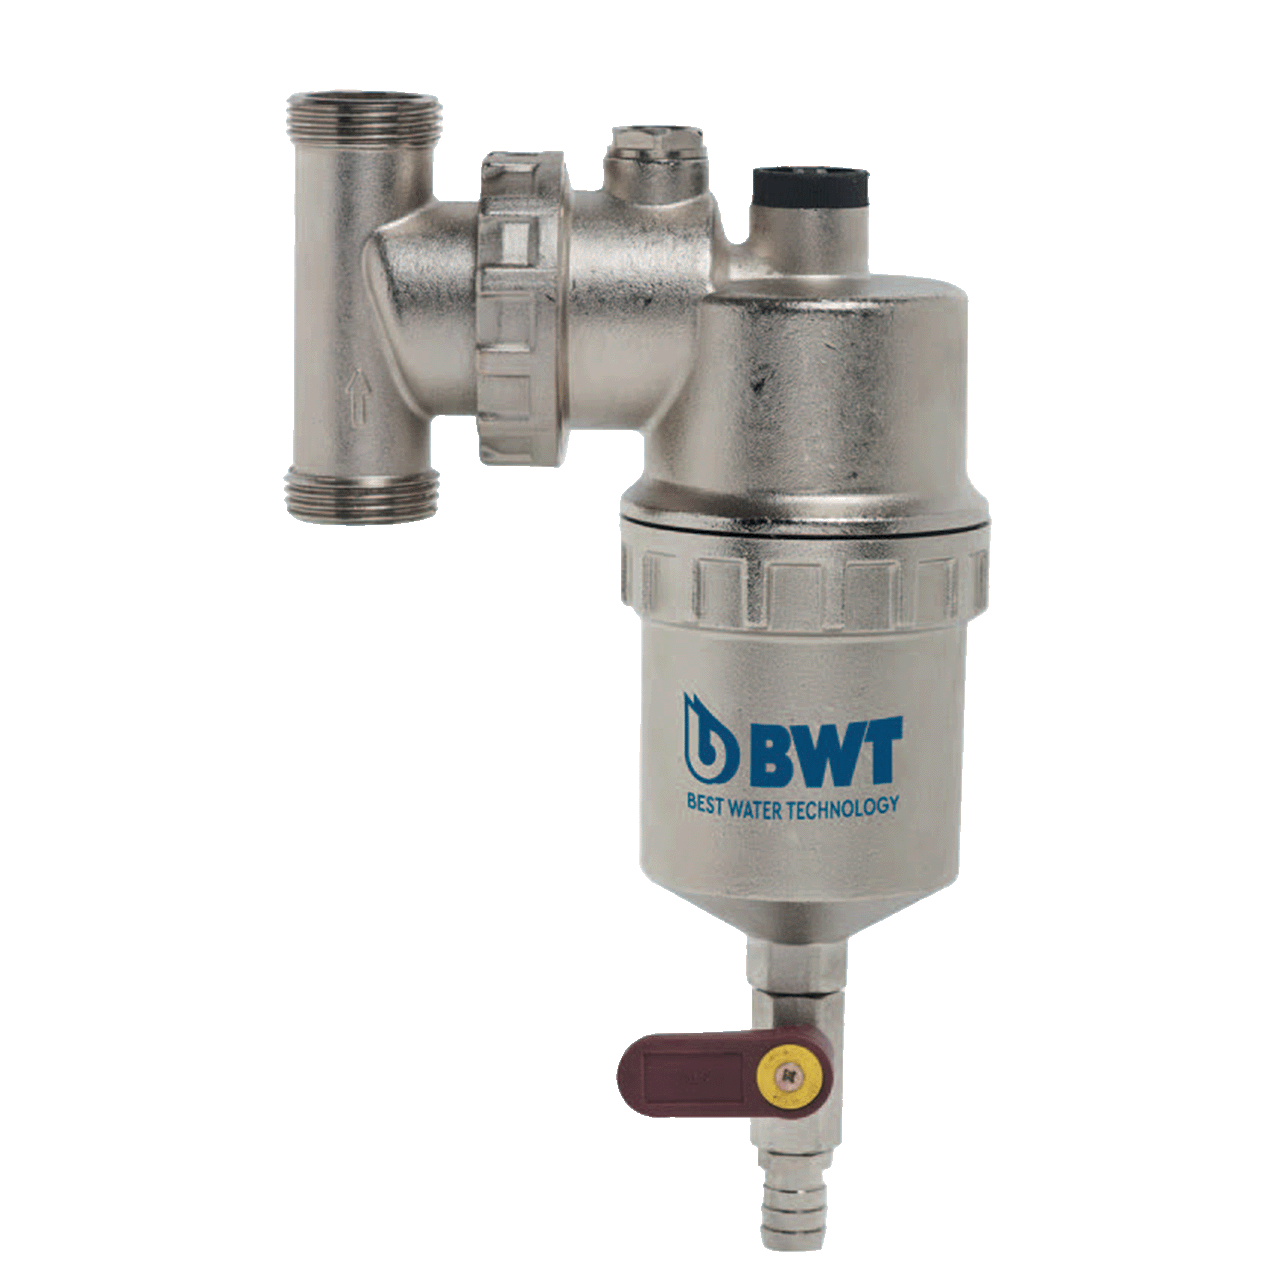 BWT SoluTECH Silvermag 360 vannbehandling for varme